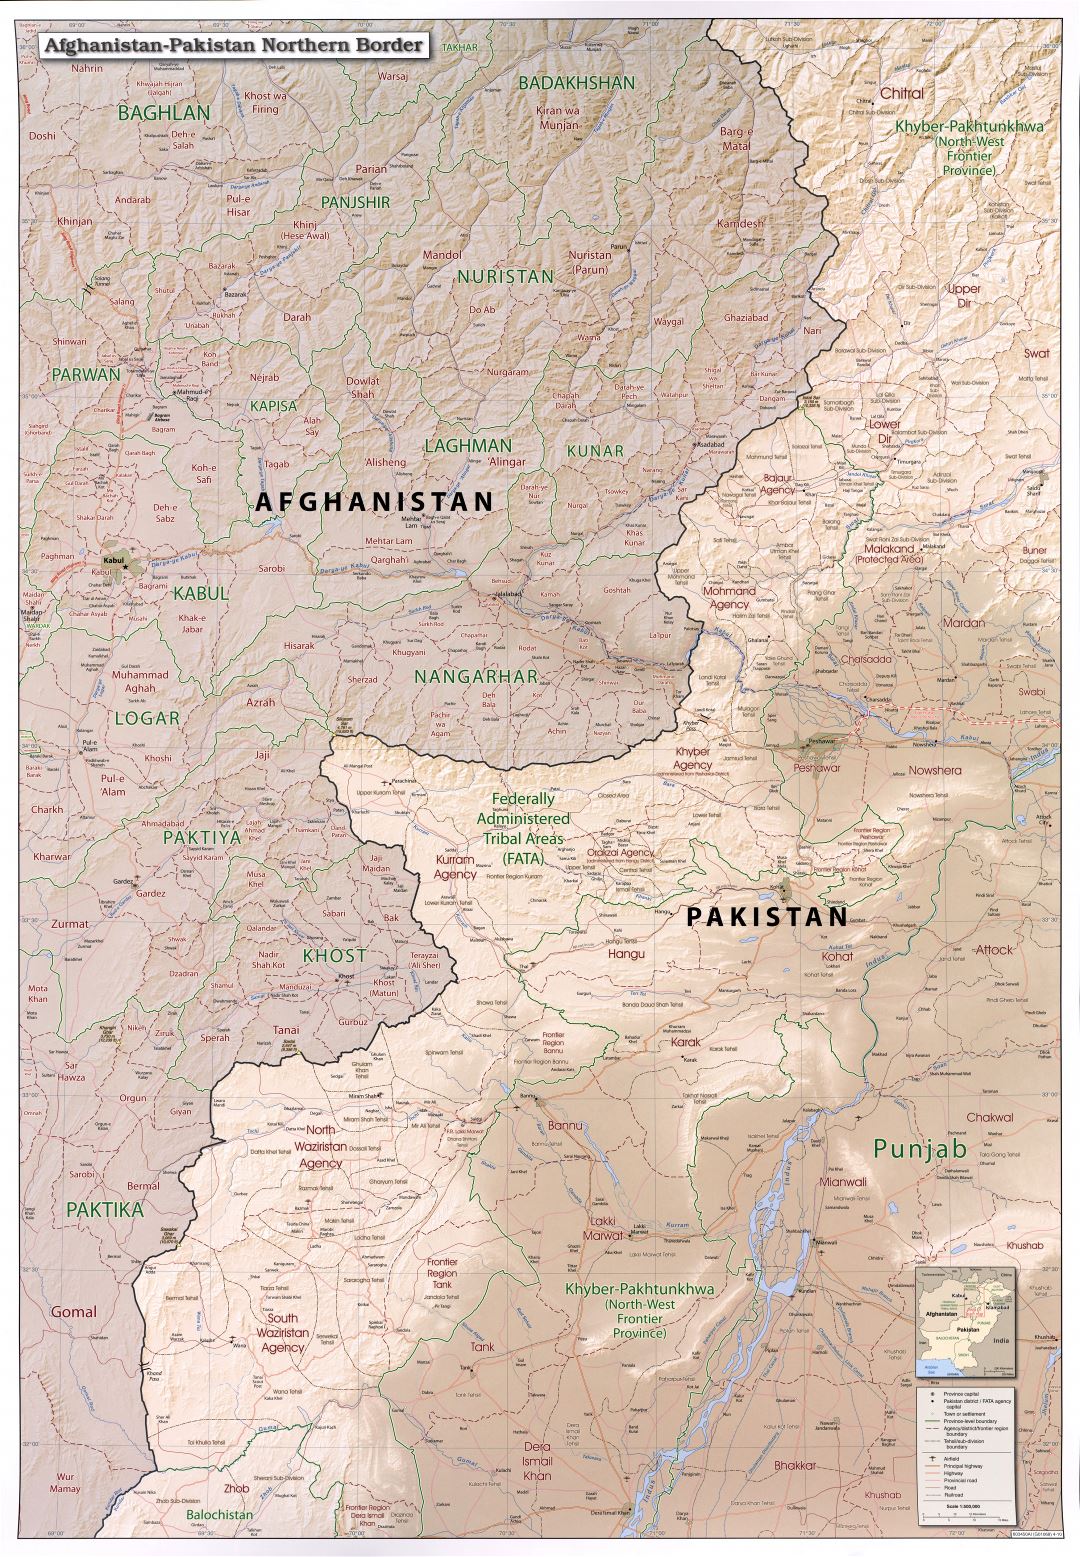 Grande detallado mapa de la frontera norte de Afganistán y Pakistán con relieve, administrativas divisiones, carreteras, ferrocarriles, aeródromos y todas ciudades - 2010